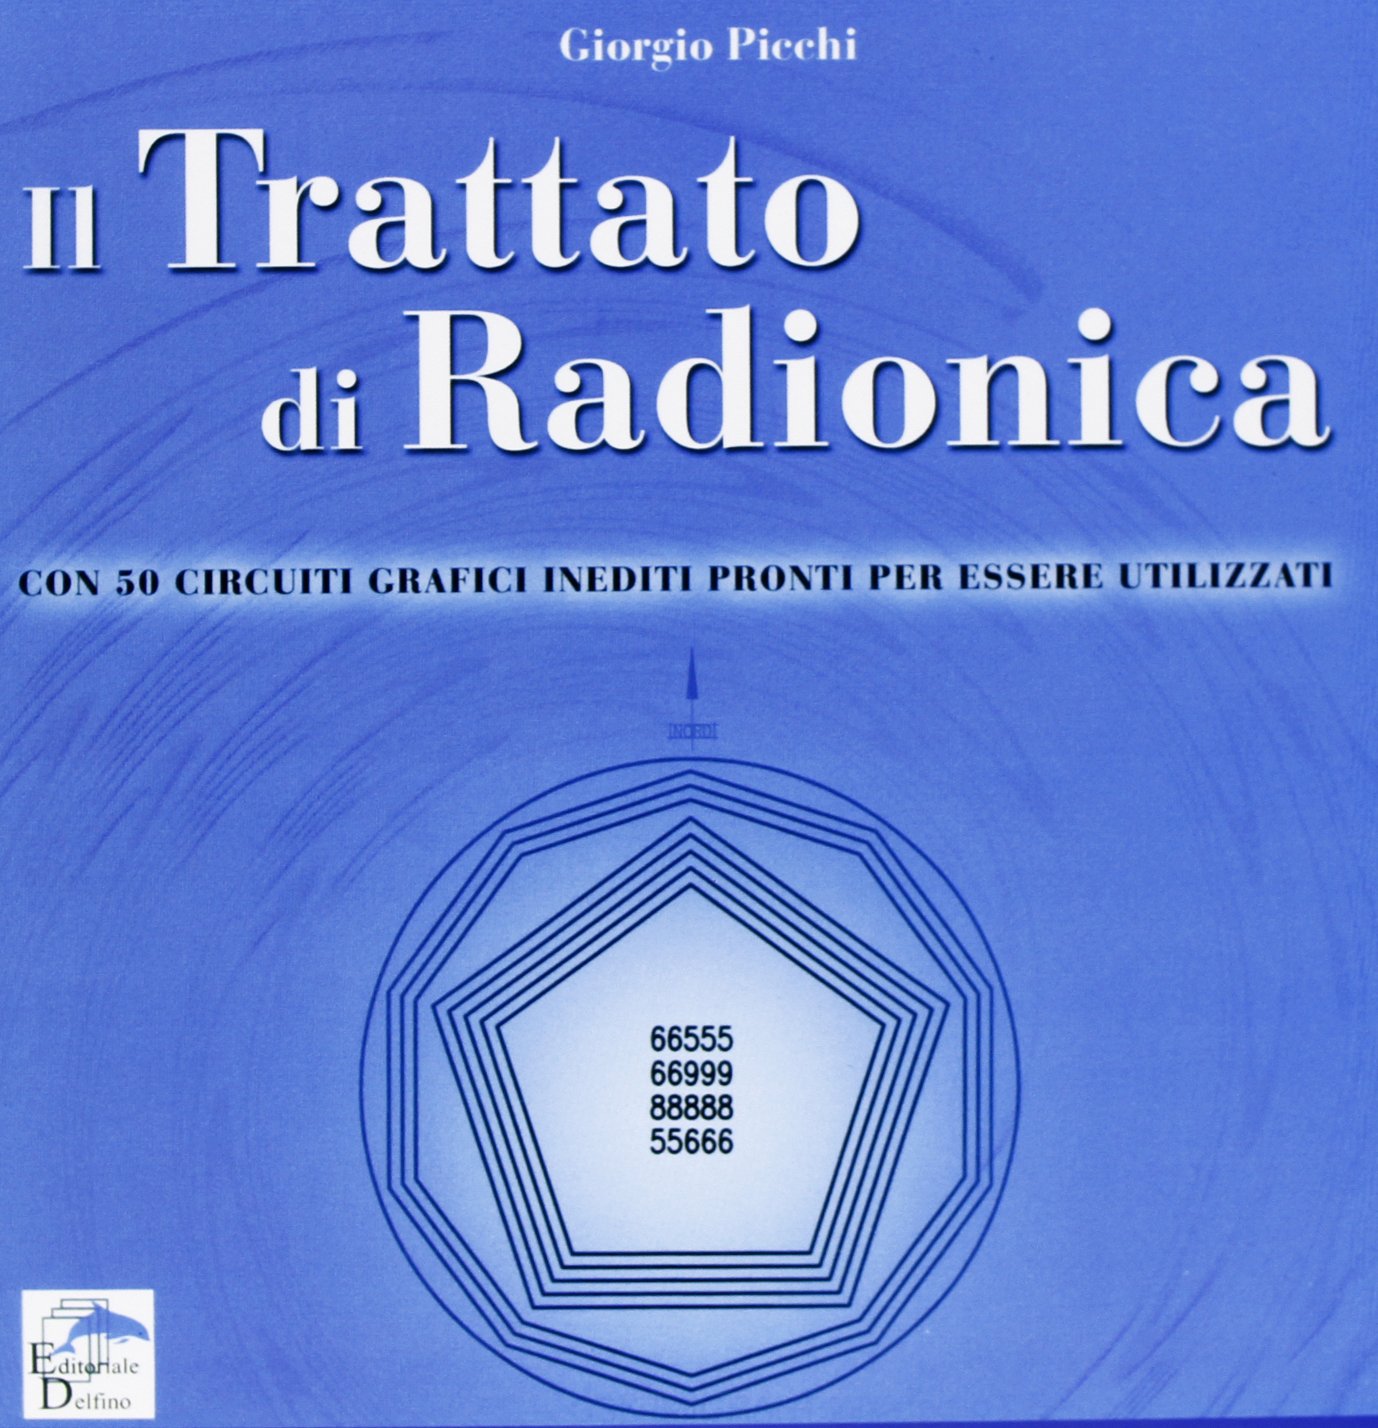 Il Trattato di Radionica. Con 50 circuiti grafici inediti pronti per essere utilizzati - Giorgio Picchi